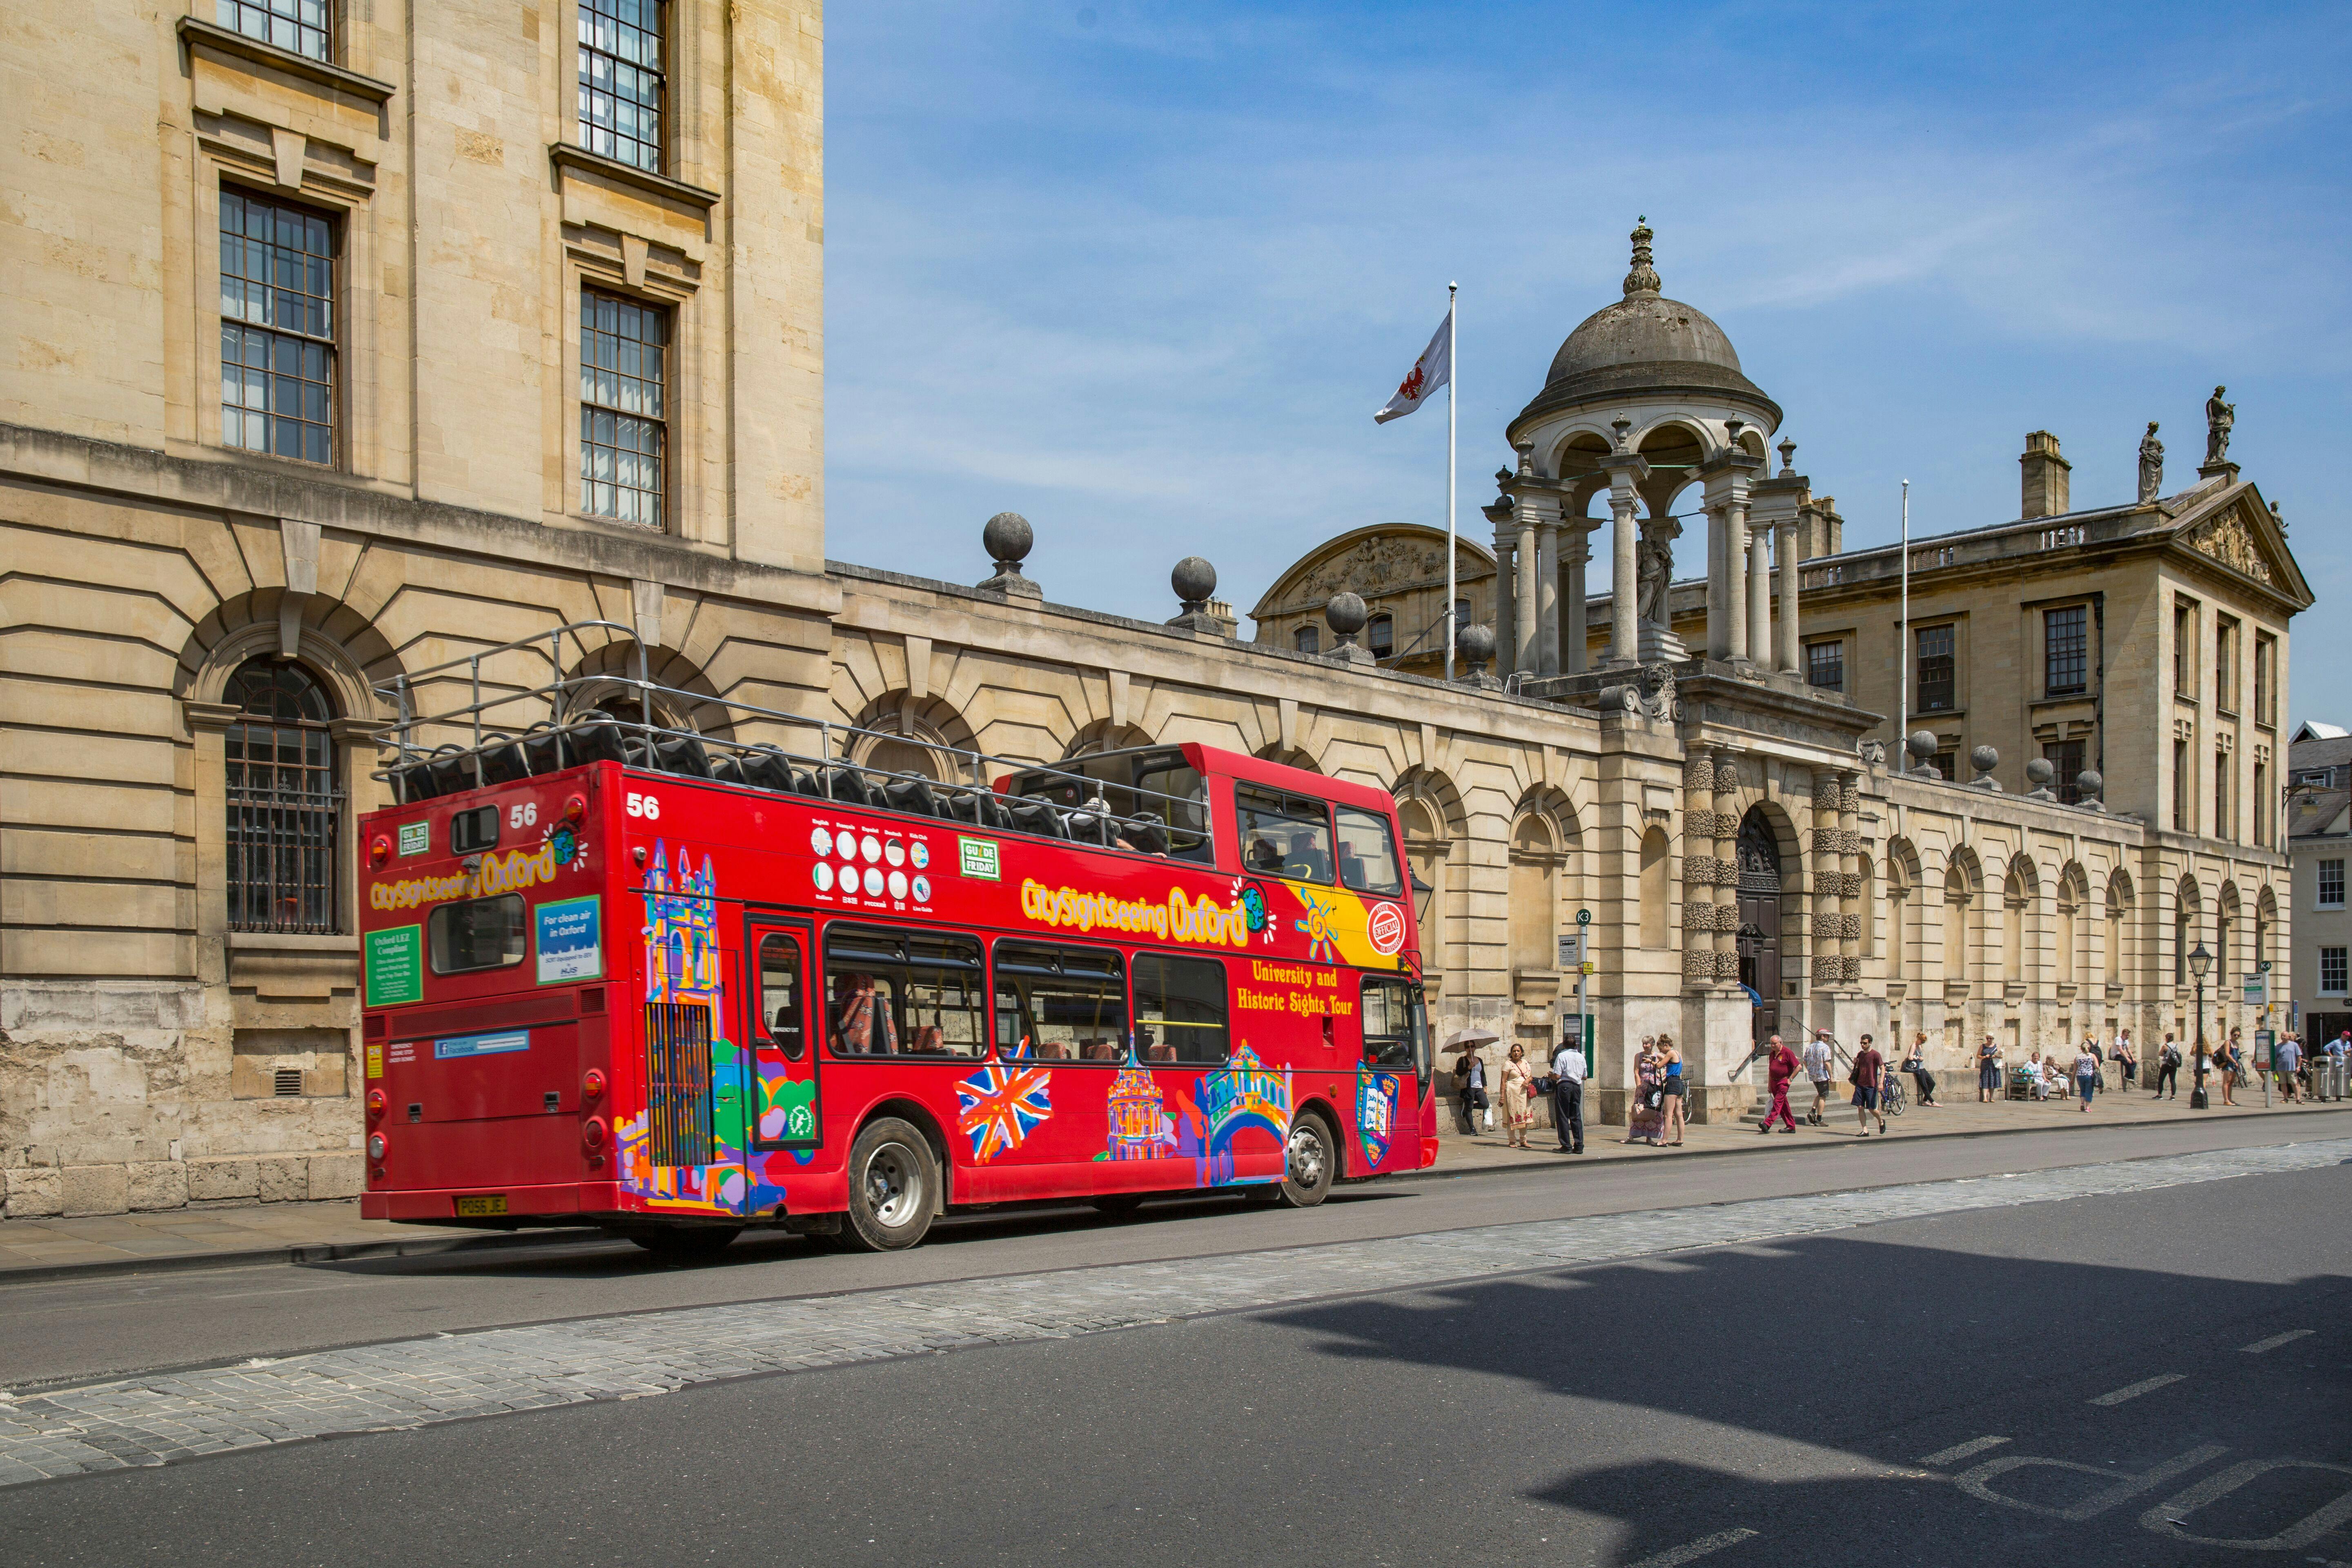 Visite d'Oxford en bus à arrêts multiples City Sightseeing avec la tour Carfax en option